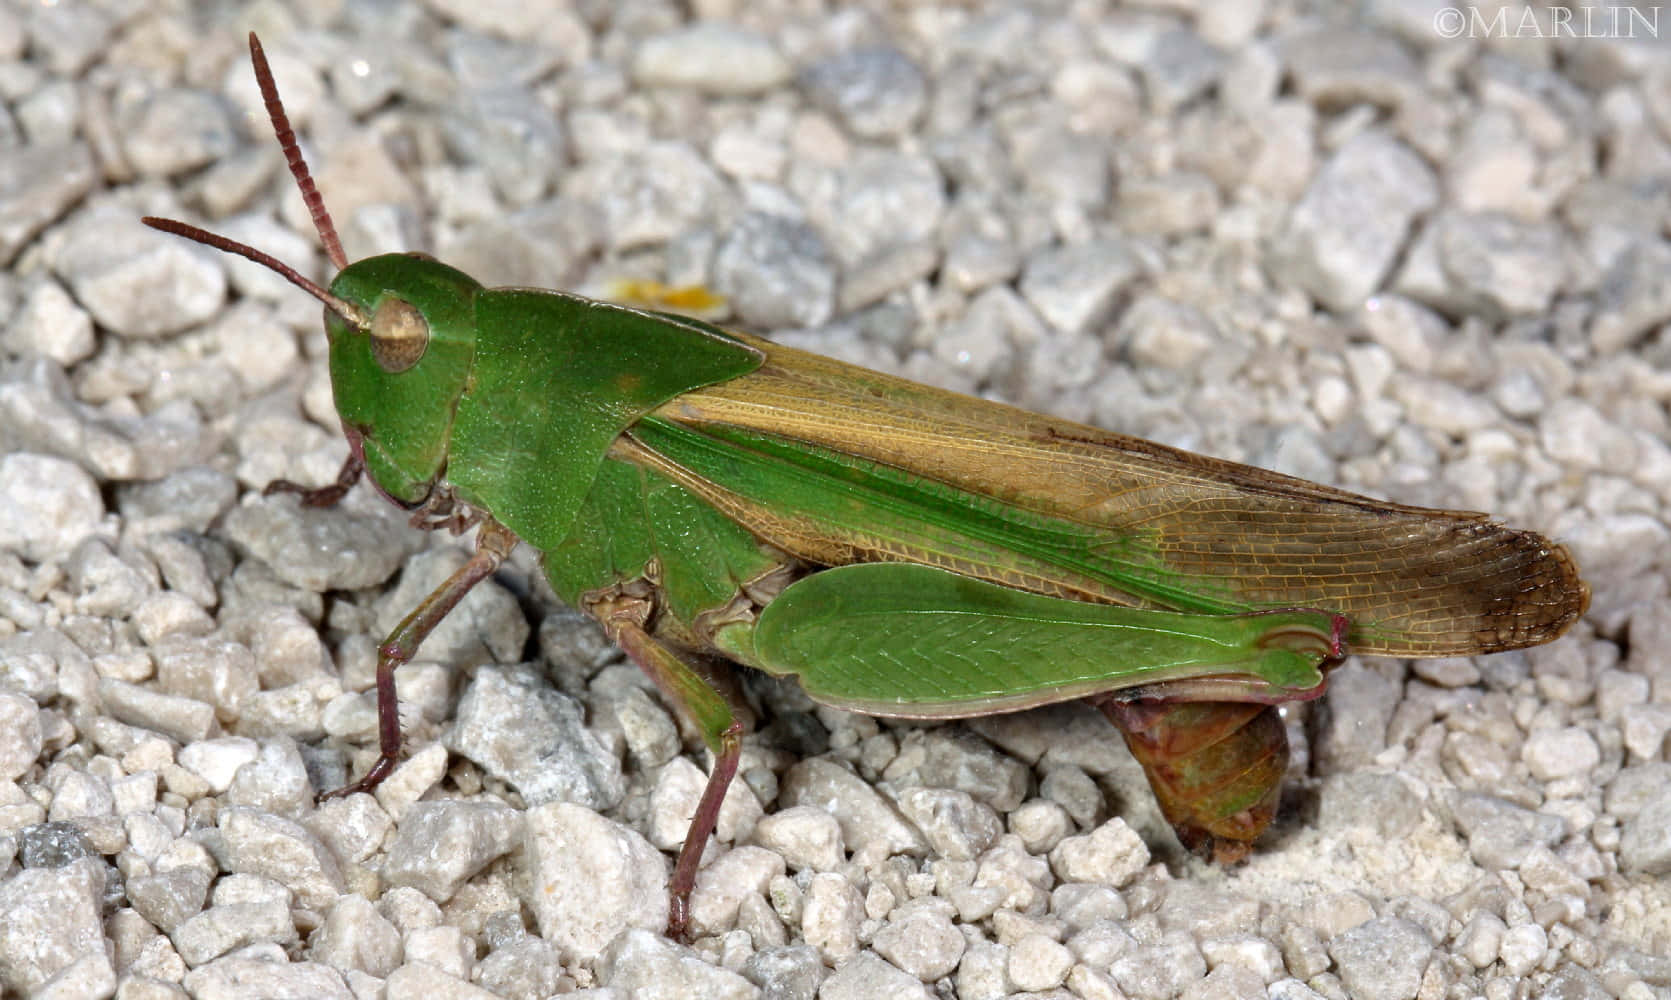 An Intriguing Close-Up Shot of a Vibrant Green Grasshopper